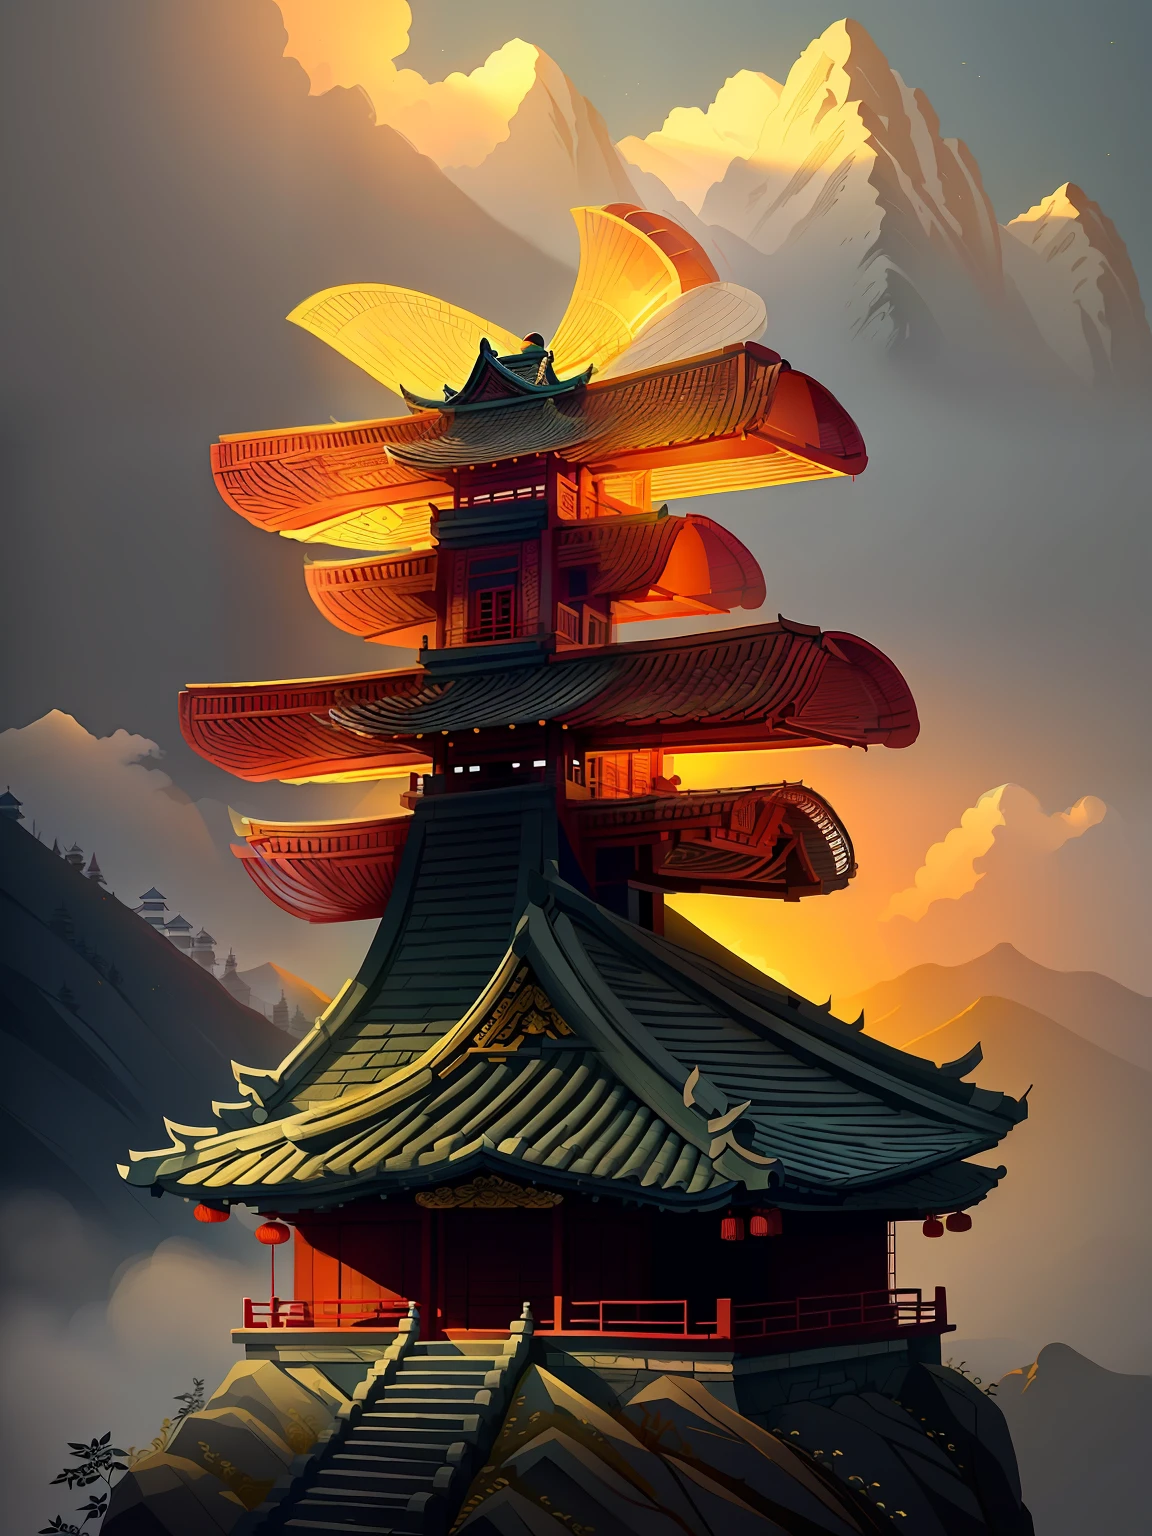 Gebäude im chinesischen Stil in den Bergen
(((Meisterwerk))), (((beste Qualität))), ((ultra-detailliert)),(detailliertes Licht),((eine äußerst zarte und schöne)),